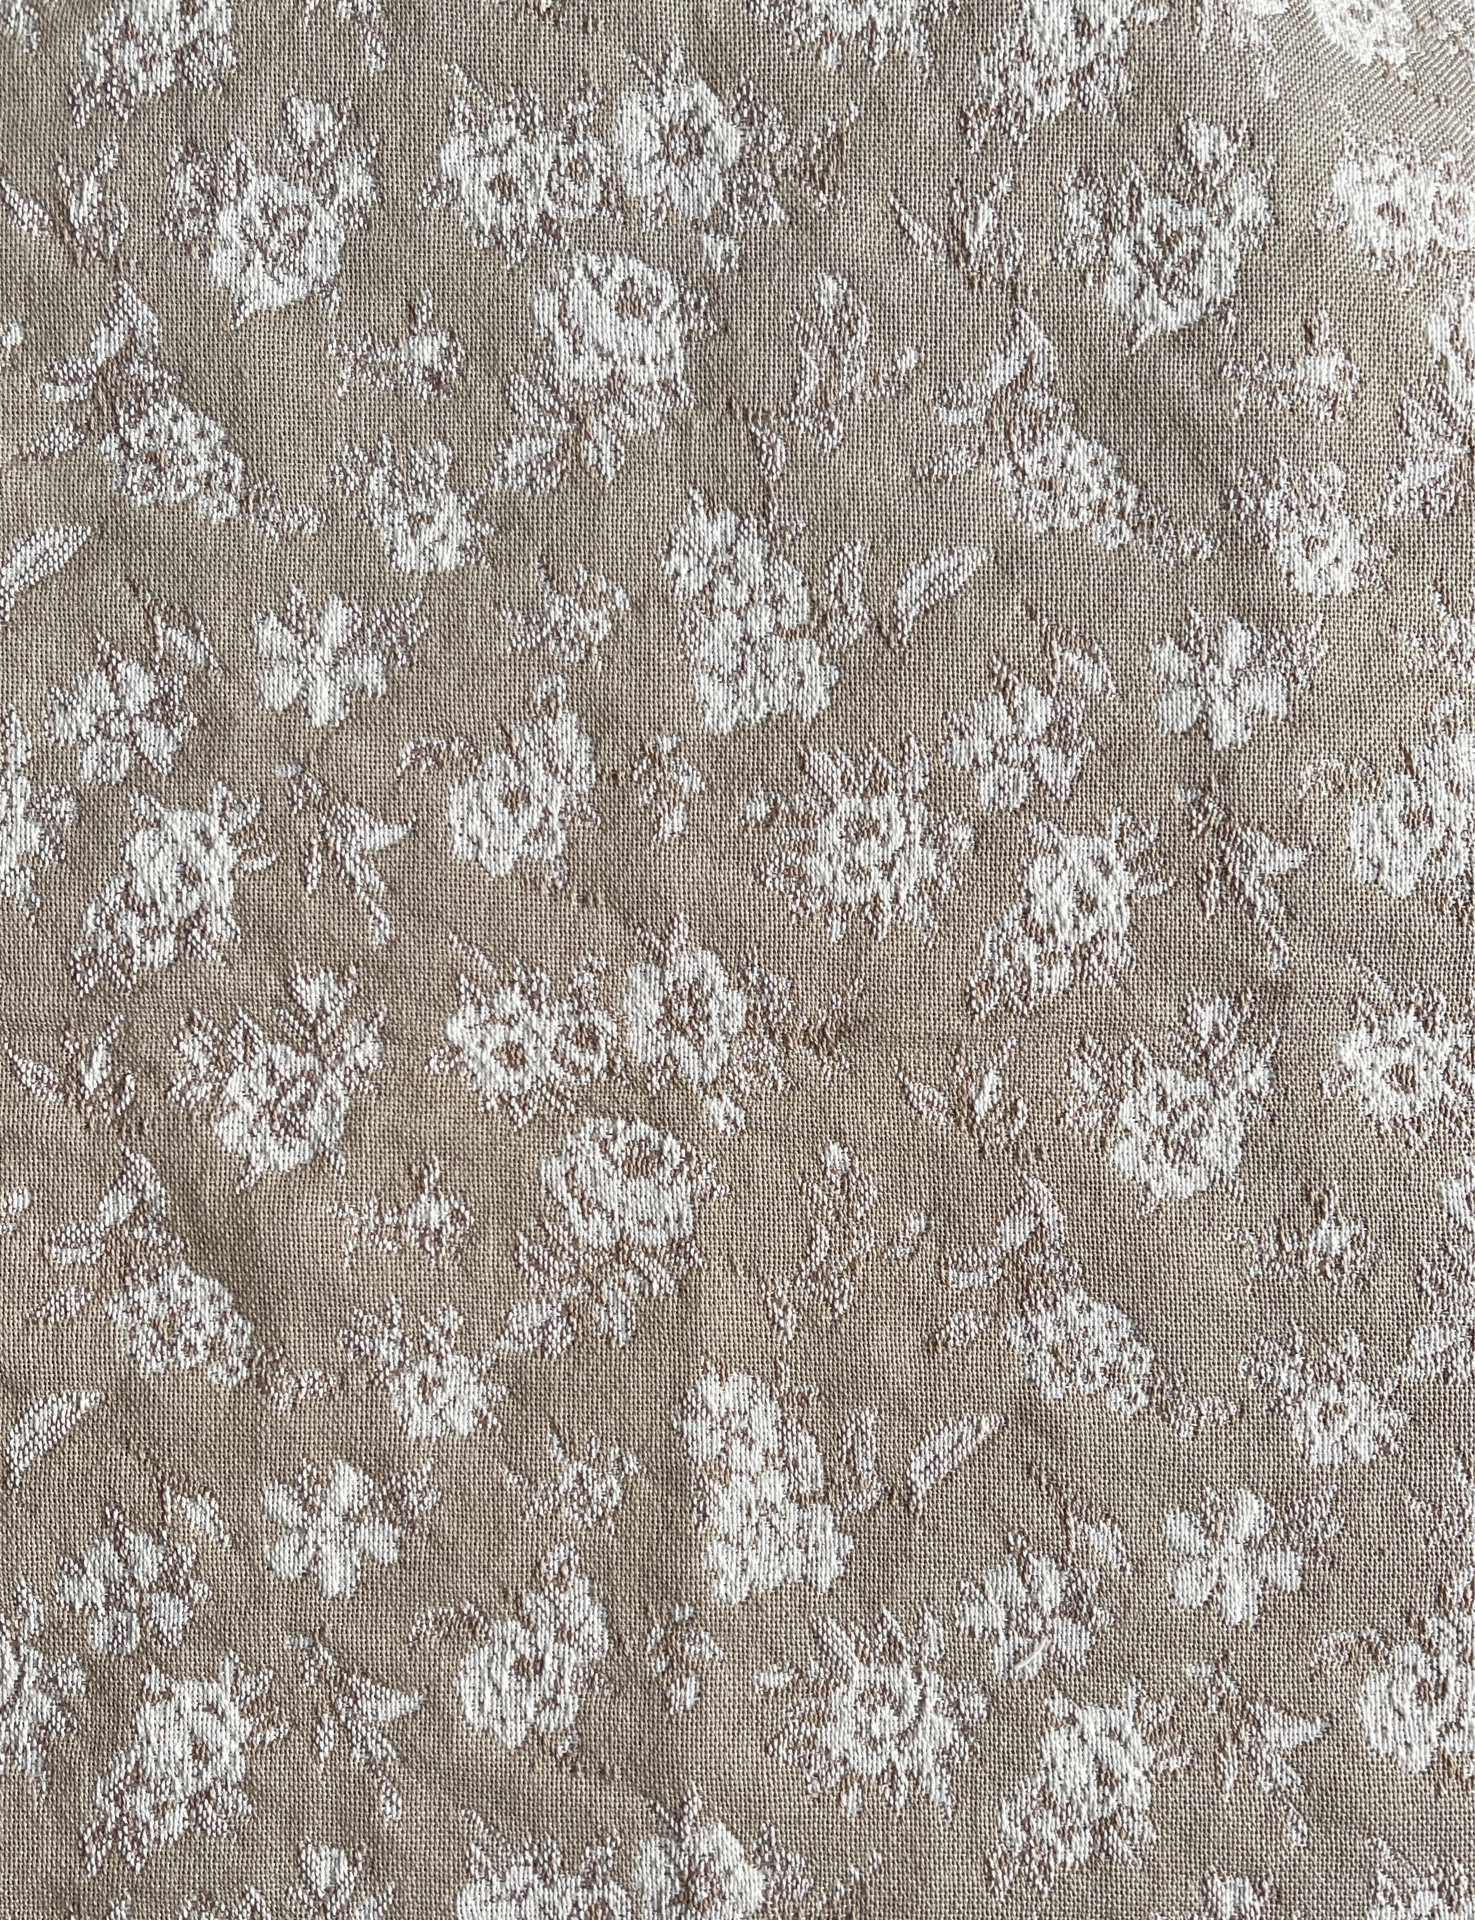 Ткань GD-J820201 интерьерная двусторонняя жаккард Бежевая Роза Прованса на отрез